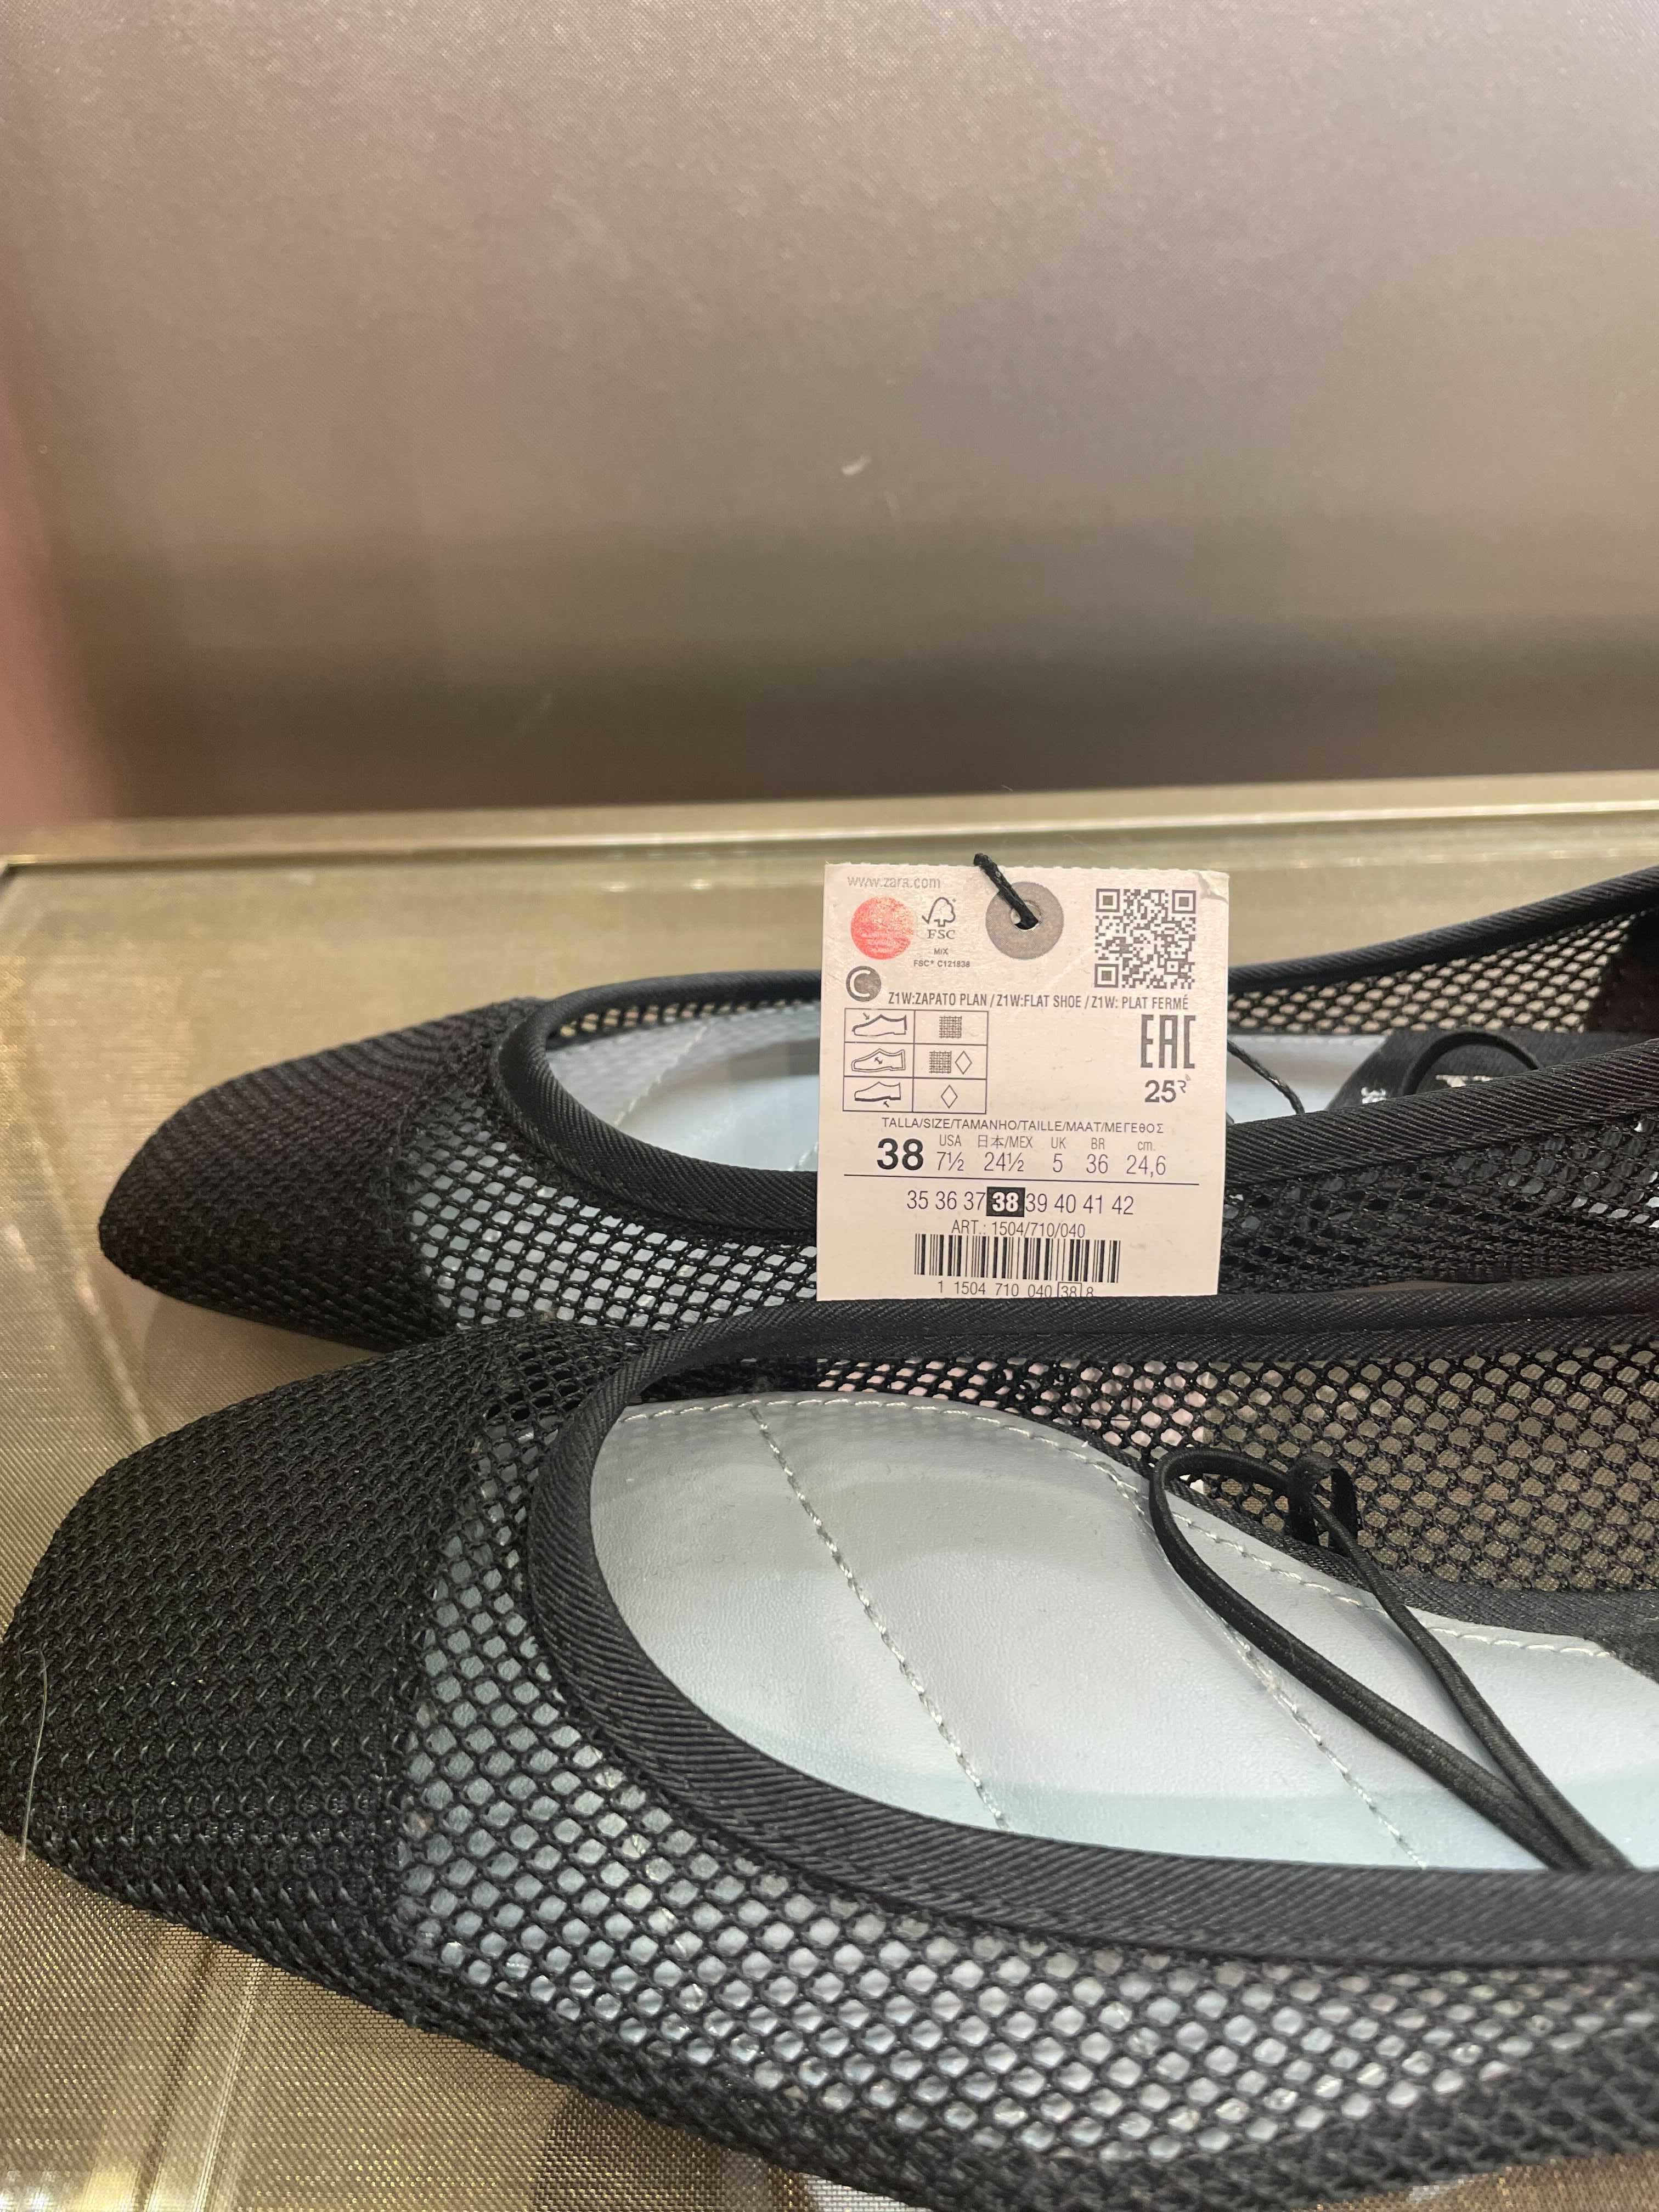 MED SYMBOL: Tilbehør som sko hadde derimot symbol på seg. Sko kan virkelig variere i passform, så kanskje sirkelen vi ser her bety at denne skoen er stor i størrelsen?